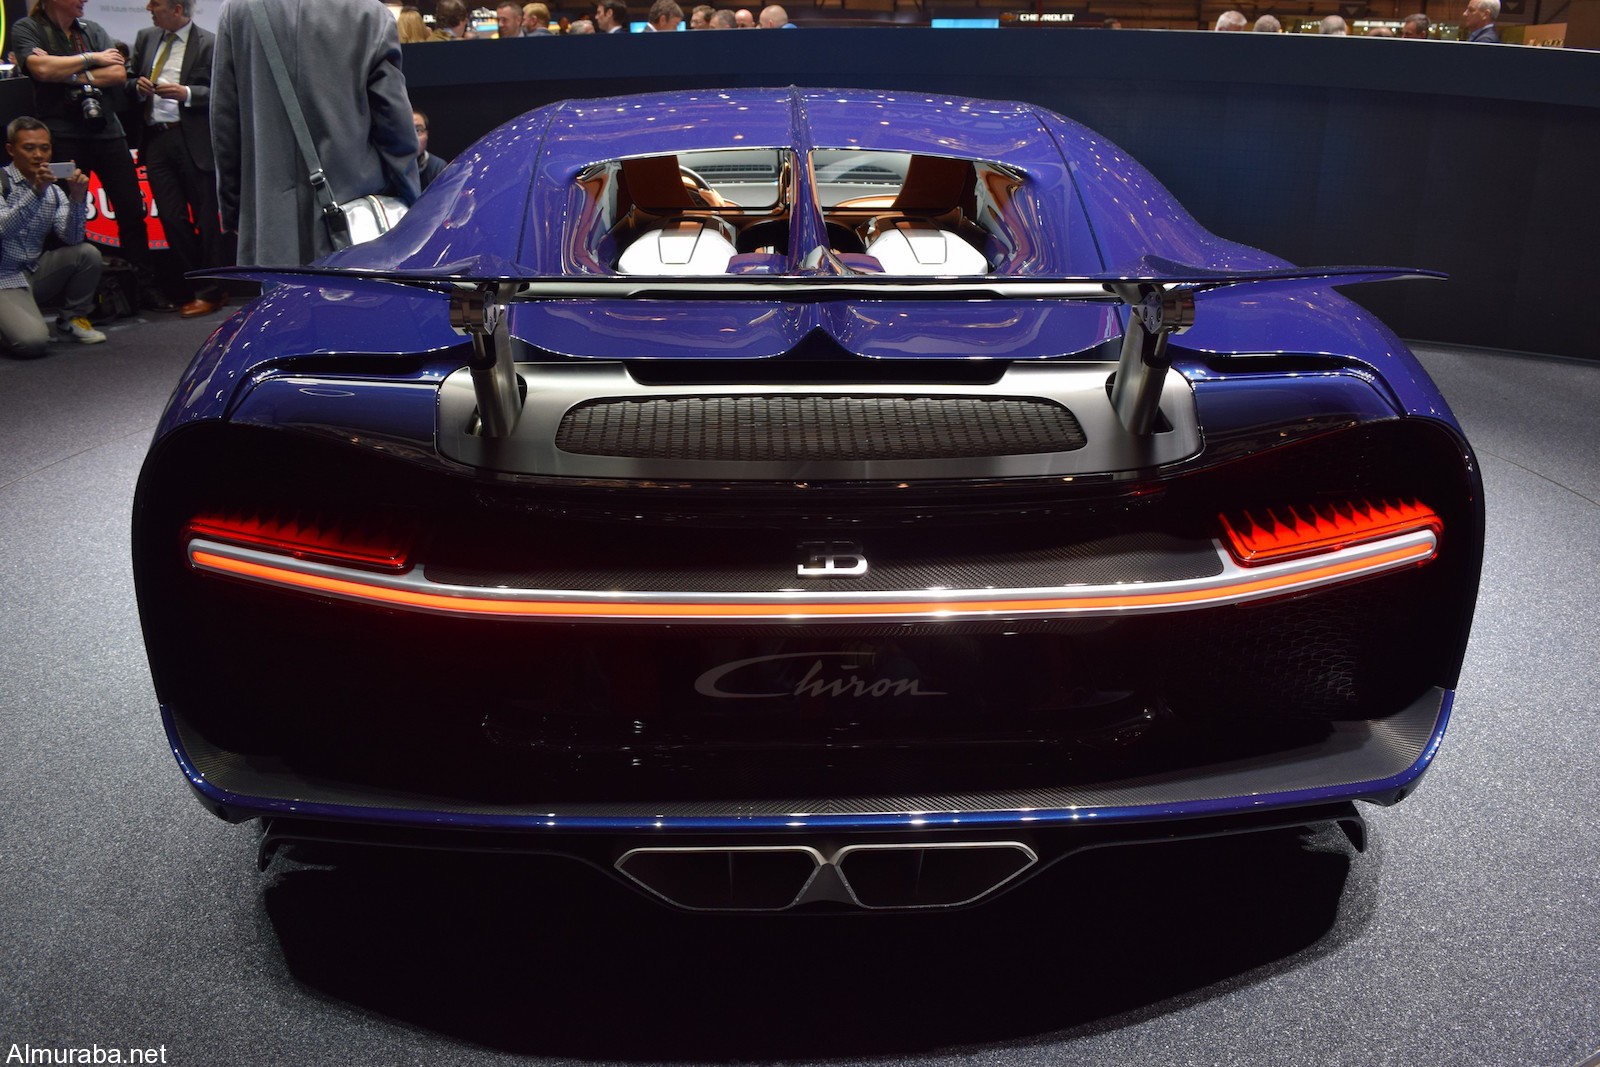 "كوينجسيج" ريجيرا أم "بوجاتي" تشيرون؛ أيّ الخارقتان ذوات محركات الـ1,500 حصان تفضلون؟ Koenigsegg Vs Bugatti 6